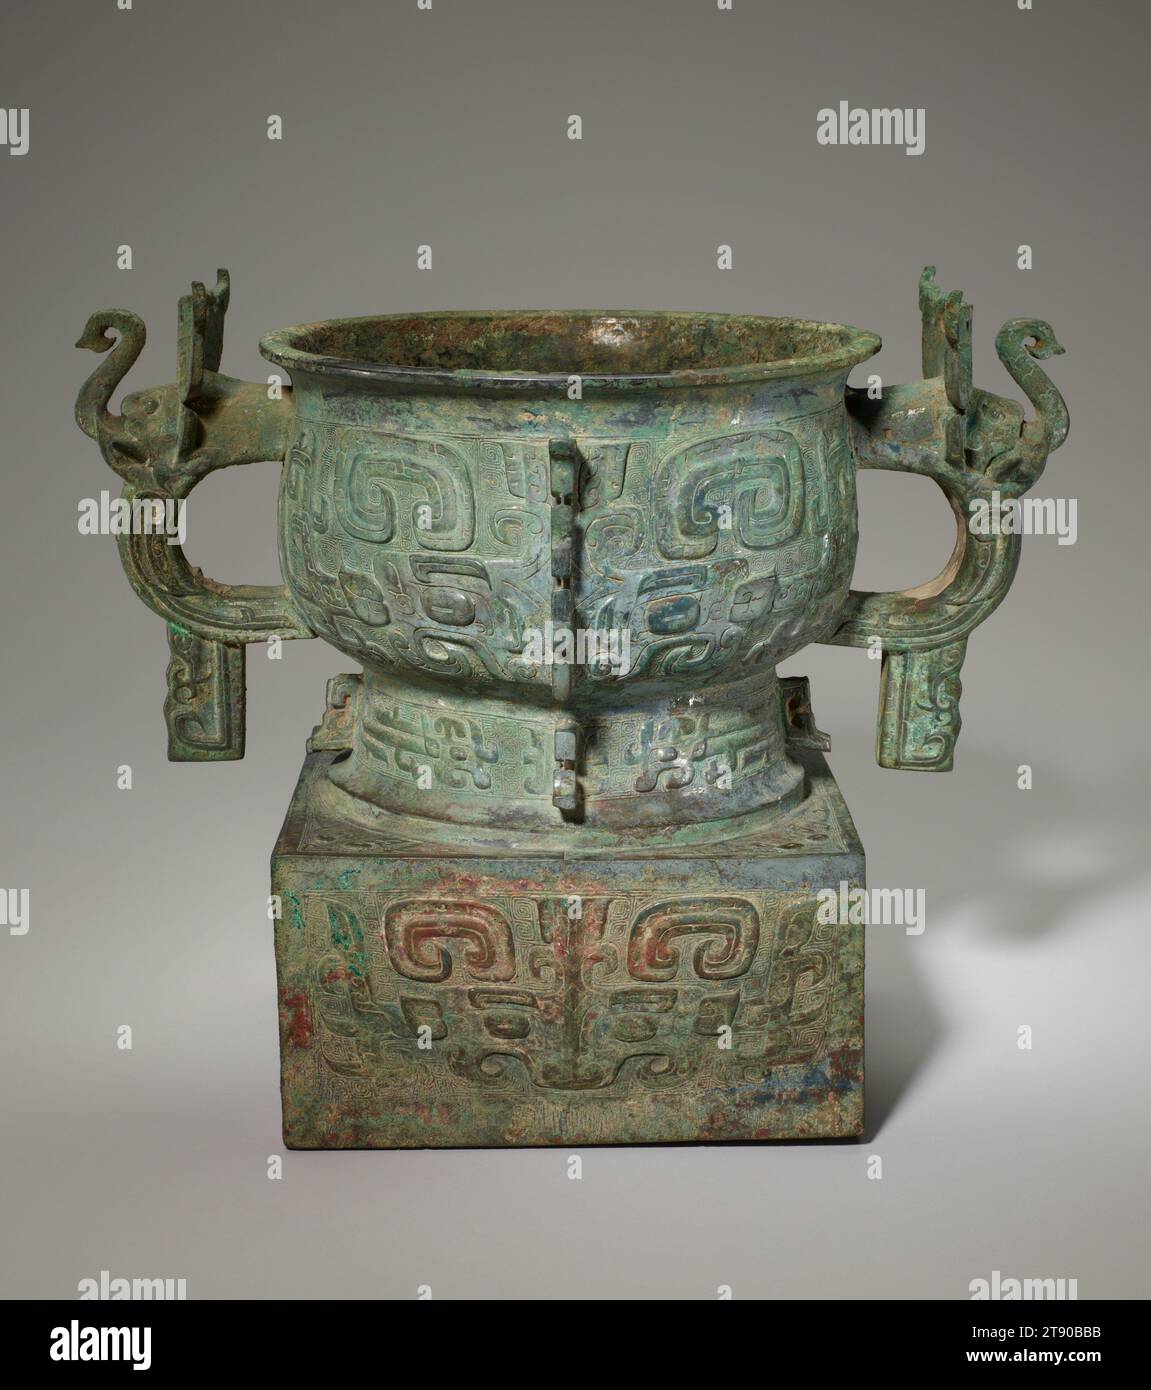 Récipient alimentaire GUI, 11e siècle av. J.-C., 11 5/16 × 13 3/4 × 9 1/16 po., 16,1 lb. (28,73 × 34,93 × 23,02 cm, 7,3 kg)7 5/8 × 7 1/2 po. (19,37 × 19,05 cm) (partie de l'objet, pied), Bronze, Chine, 11e siècle av. J.-C., cette interface graphique démontre l'inventivité avec laquelle les artisans Zhou occidentaux ont adapté les formes Shang. Le corps principal est une interface graphique standard avec un bol profond, tandis que les poignées en boucle de chaque côté du corps sont rendues de manière innovante sous la forme d’une tête et d’un tronc d’éléphant. En outre, le récipient est surélevé par une base carrée haute. Banque D'Images